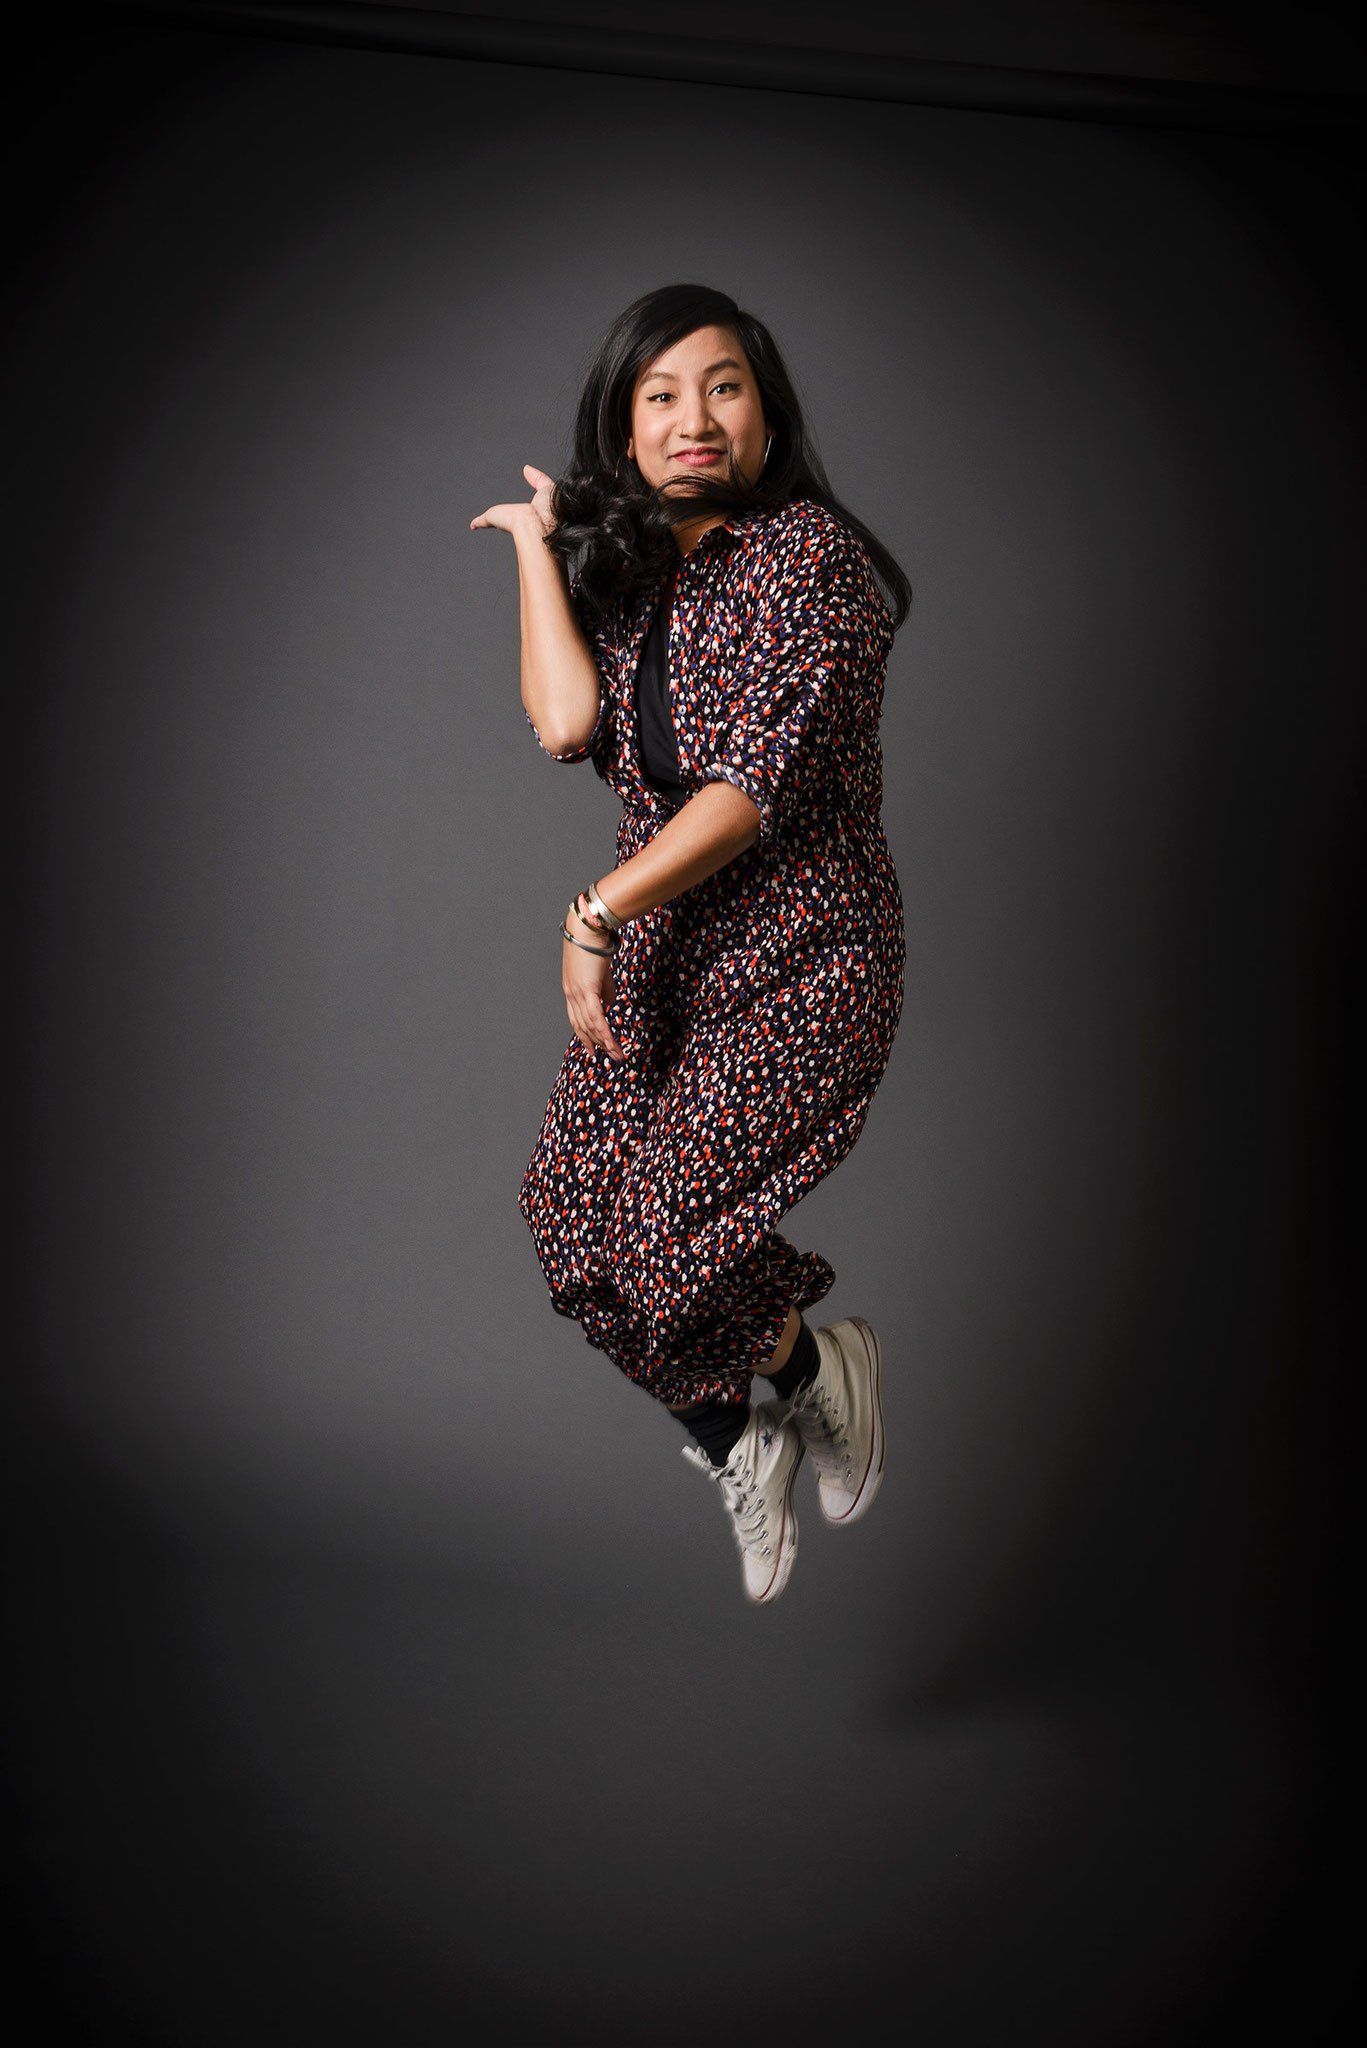 Eine asiatische Frau mit einem gepunkteten Kleid springt, Businessfotografie aus Hamburg von Kay Winter / WINTERPOL